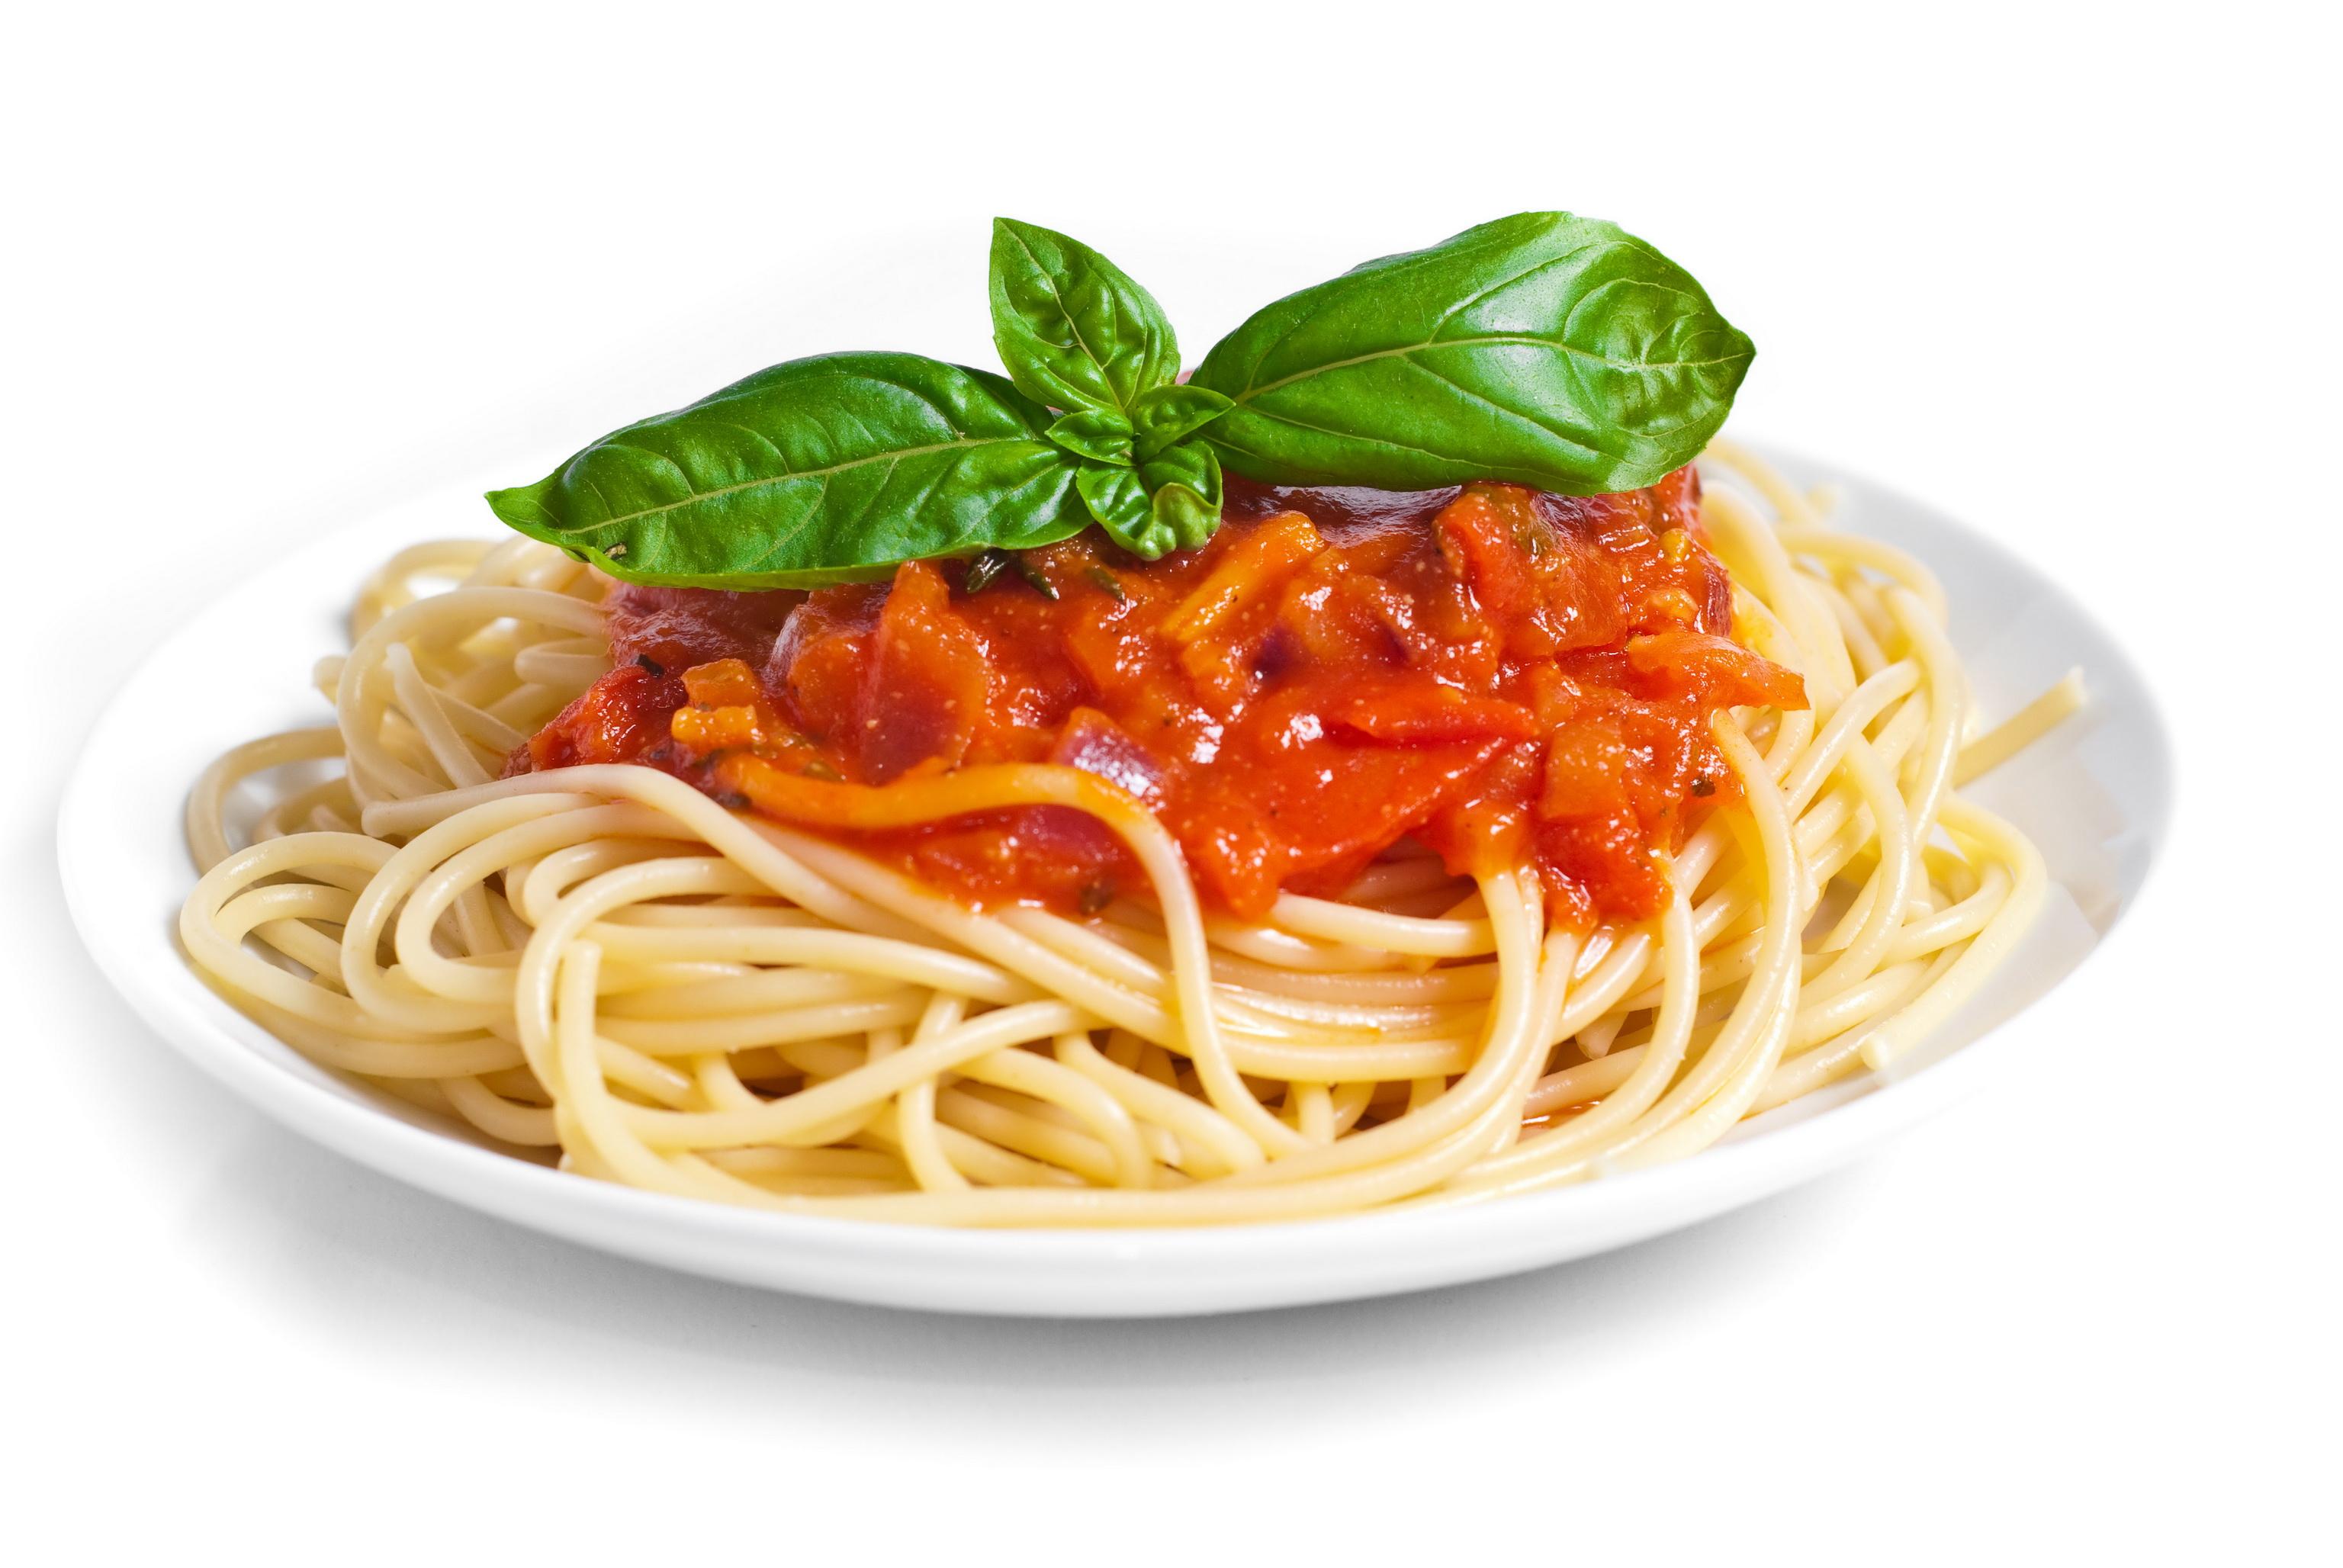 тарелки лапша макароны plates noodles pasta загрузить